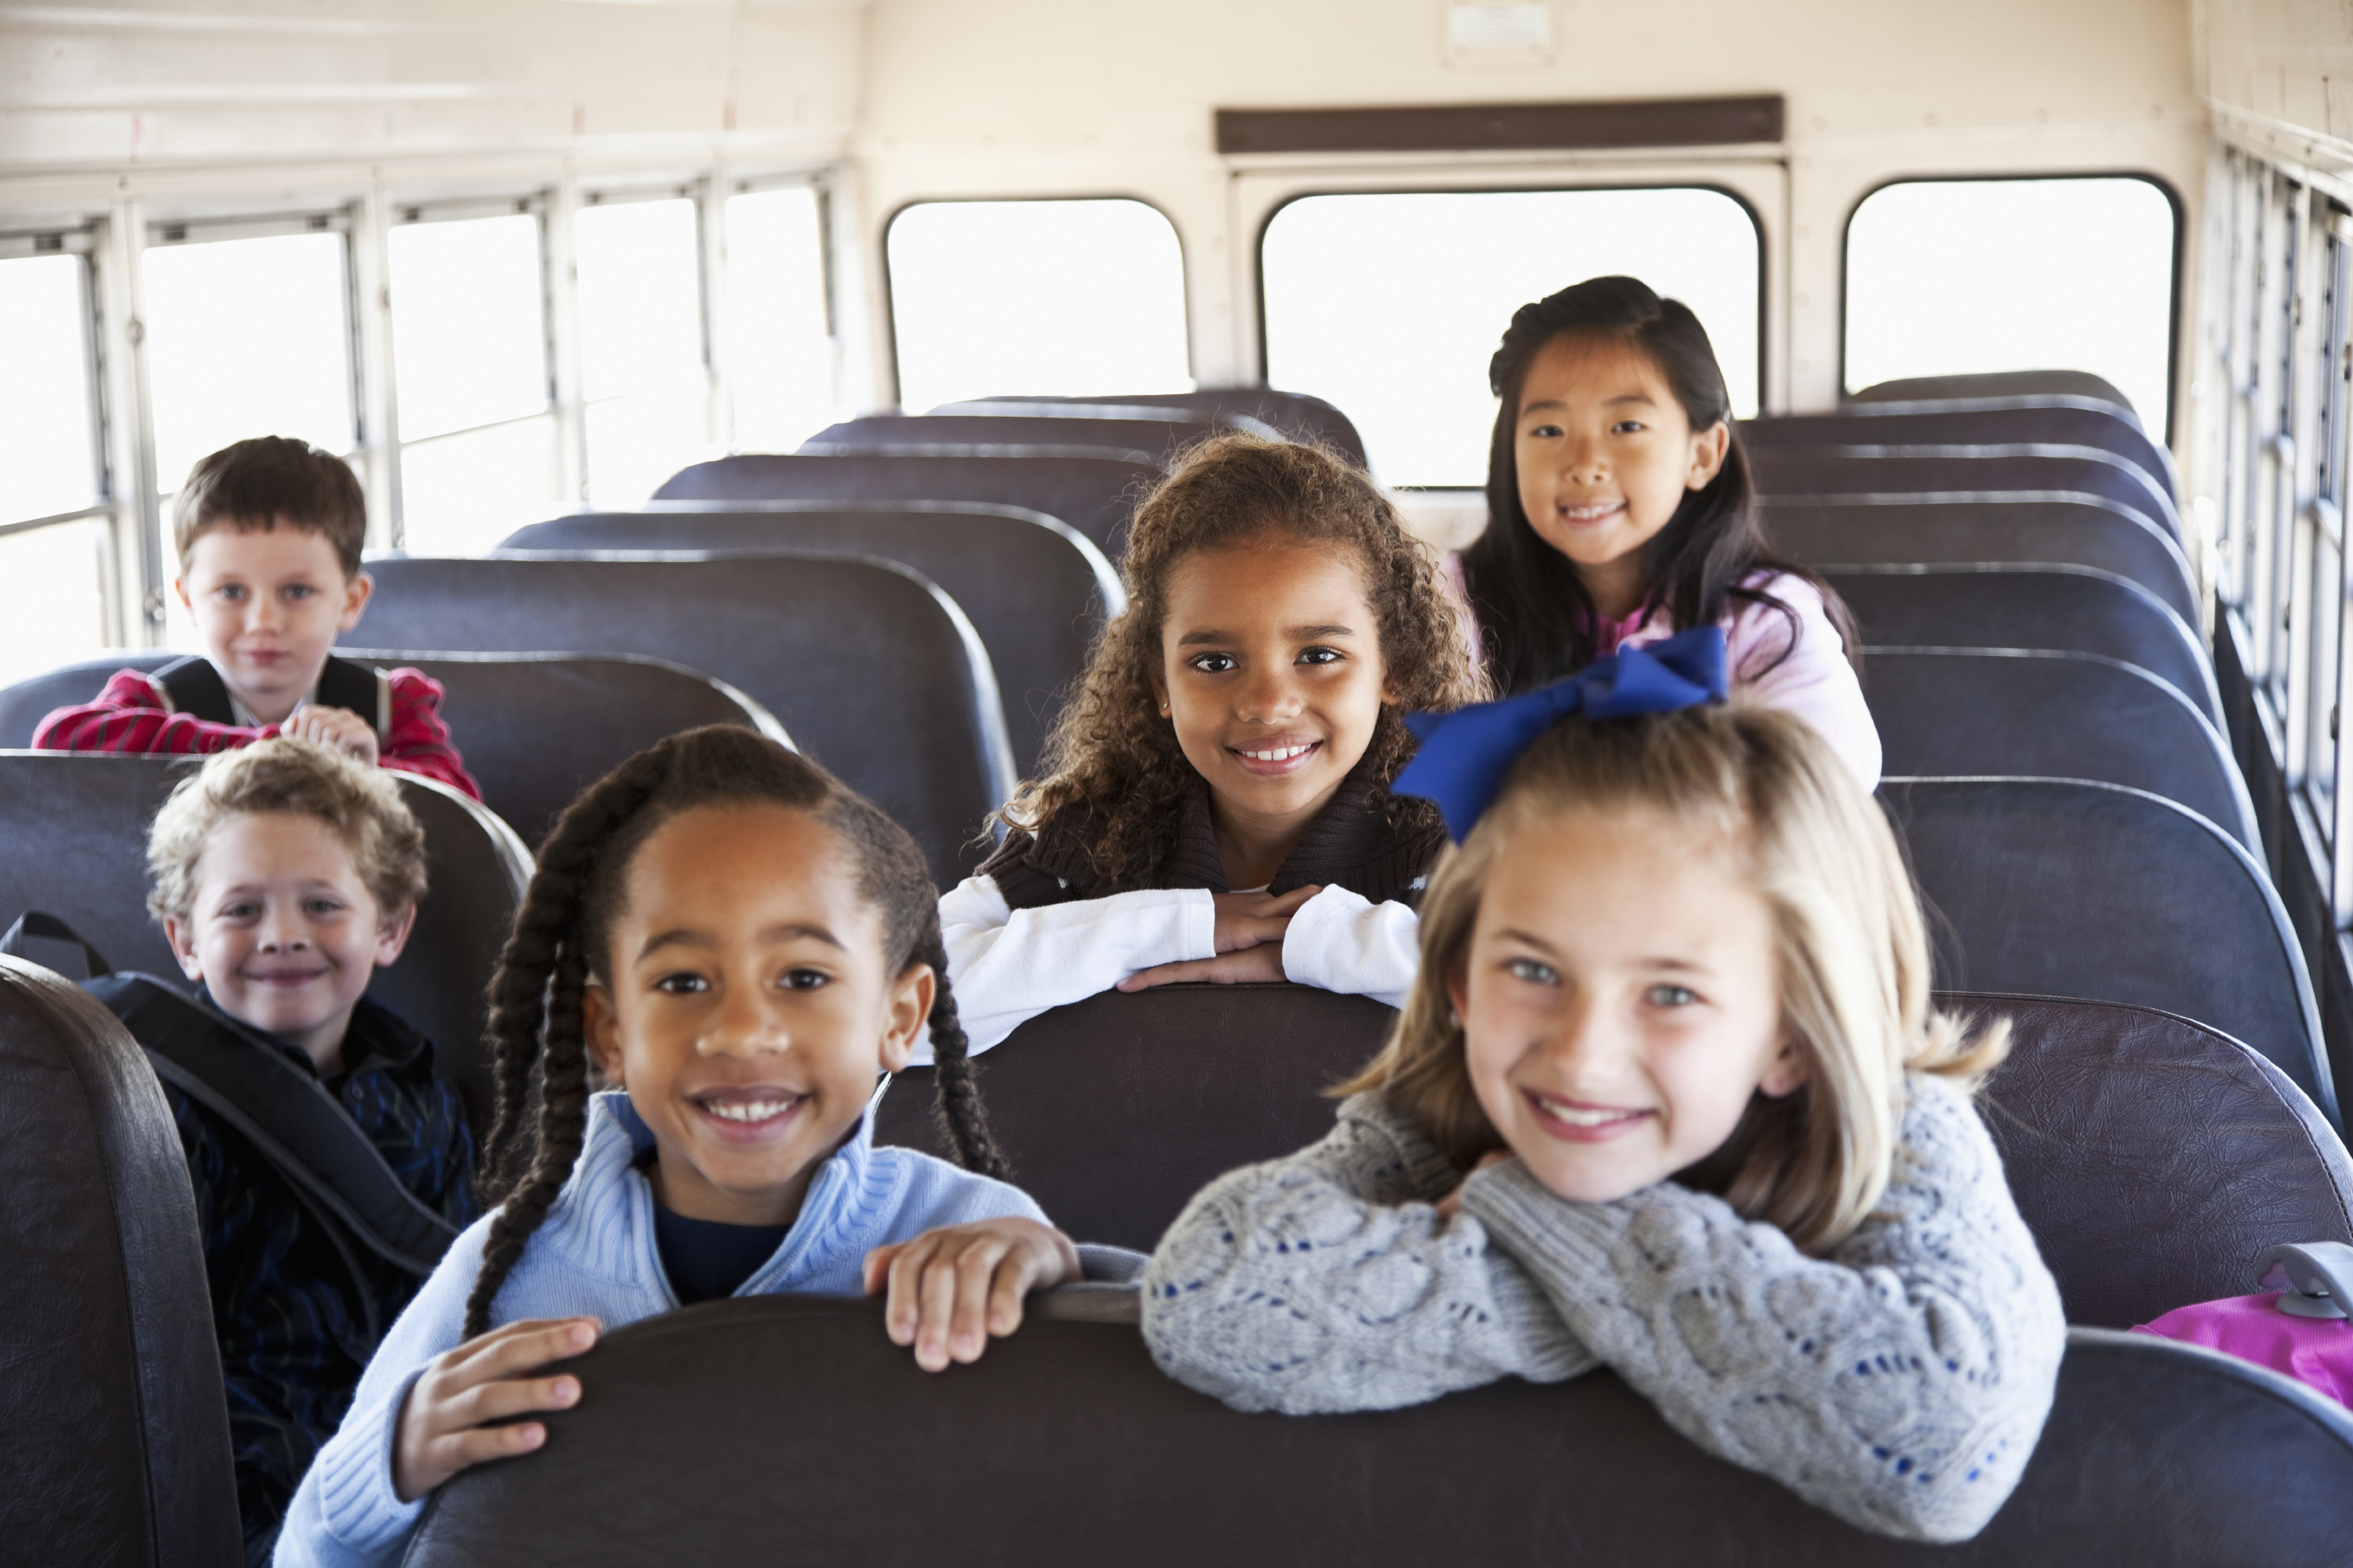 Children sitting inside school bus